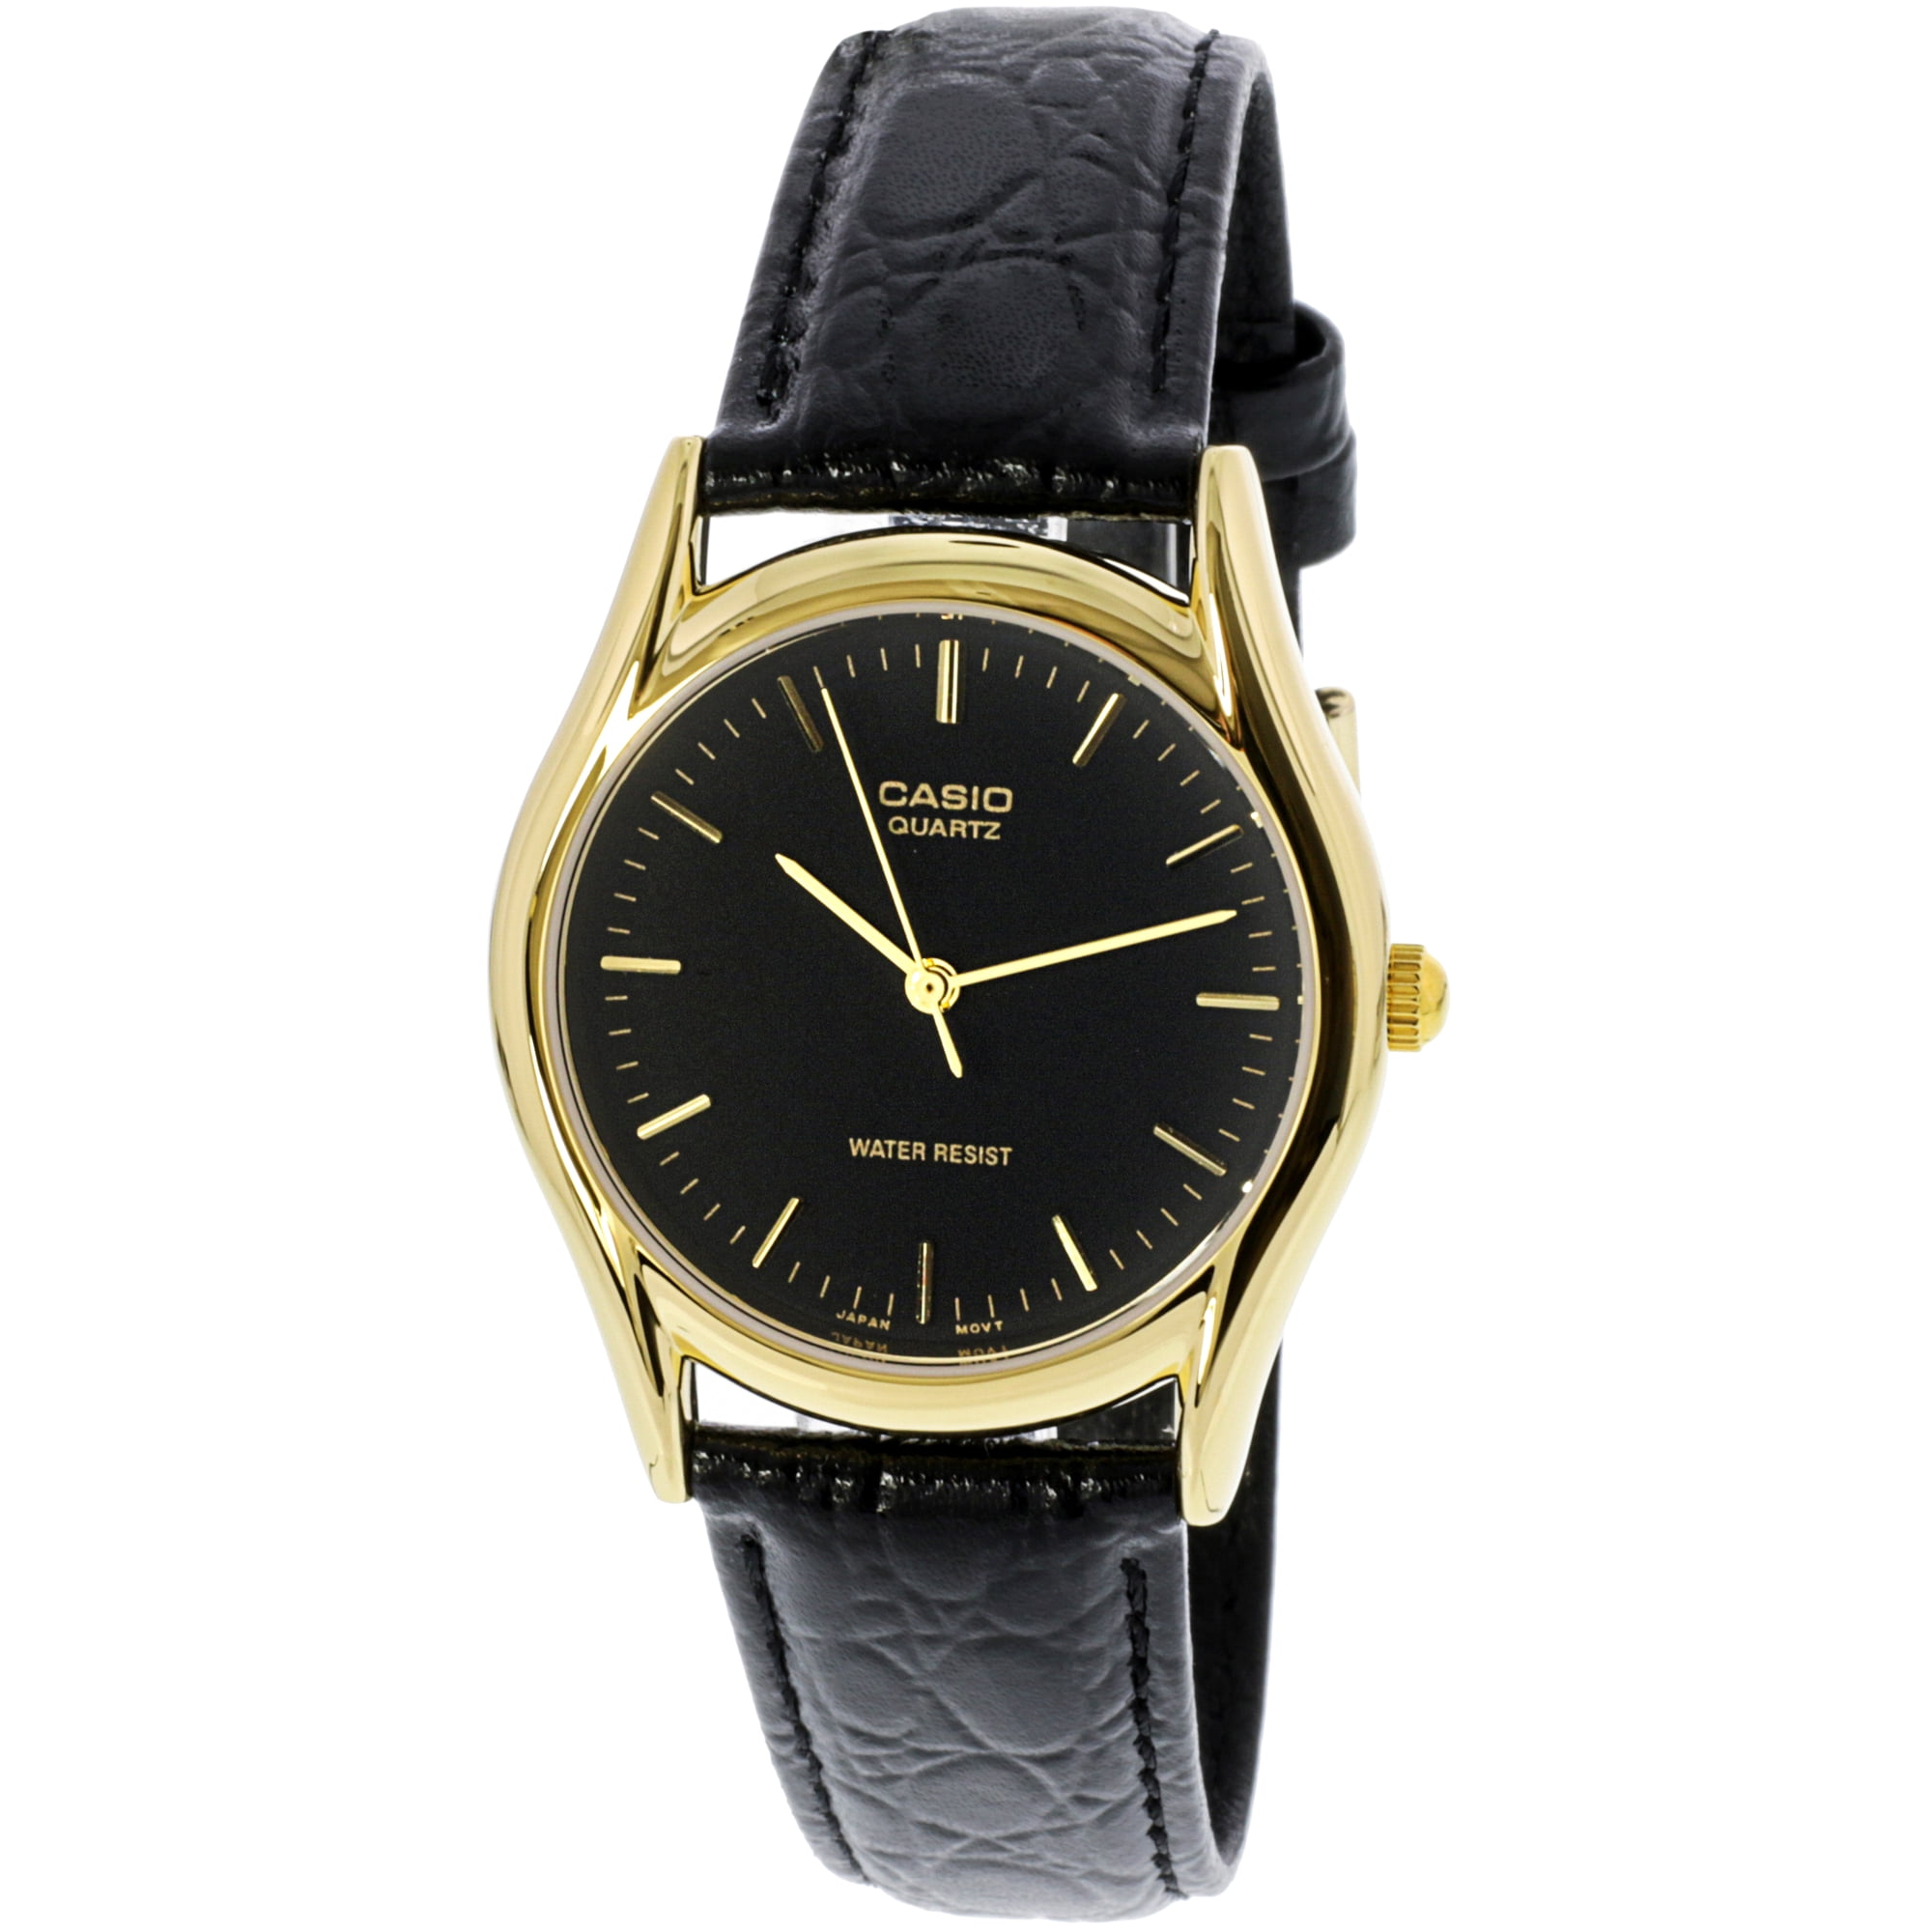 Casio Men's MTP1094Q-1A Black Leather Quartz Fashion Watch